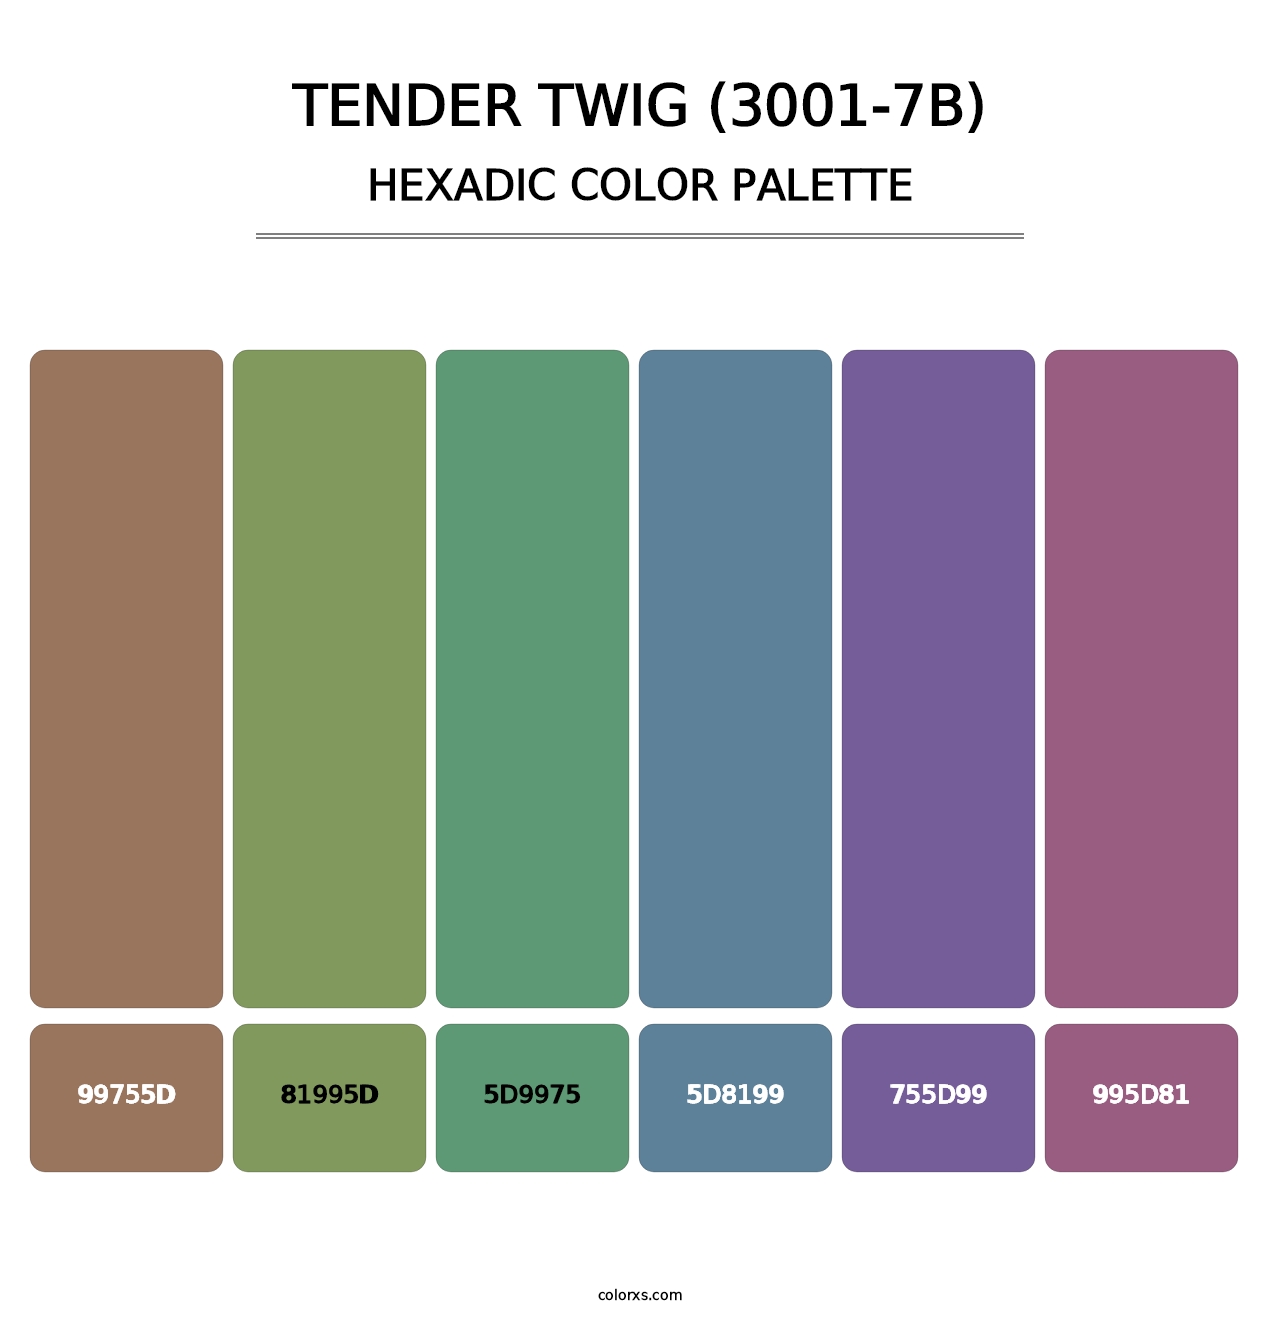 Tender Twig (3001-7B) - Hexadic Color Palette